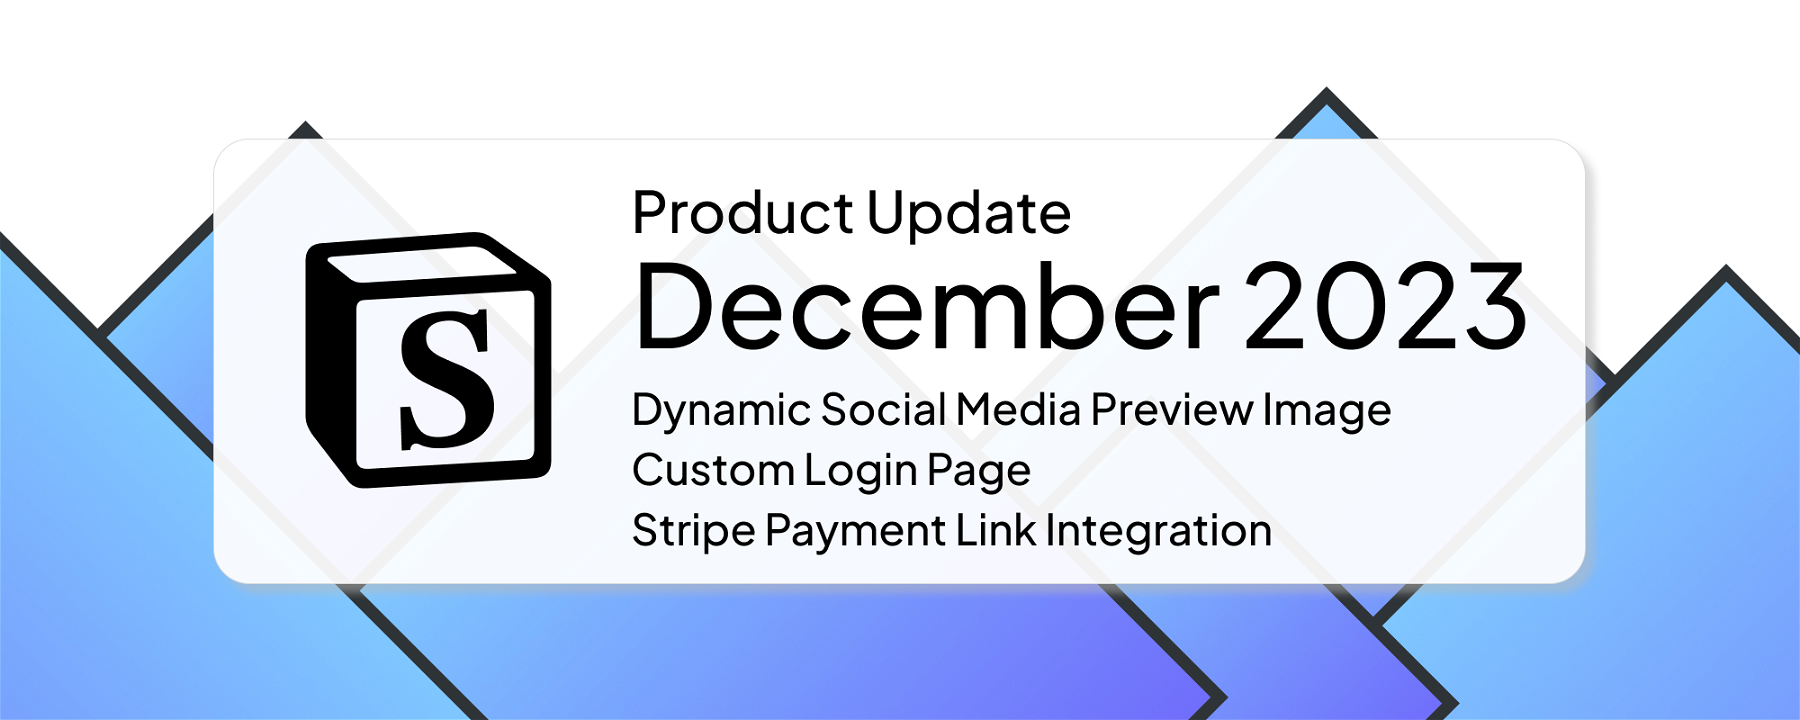 December 2023: Dynamic Social Media Preview Image